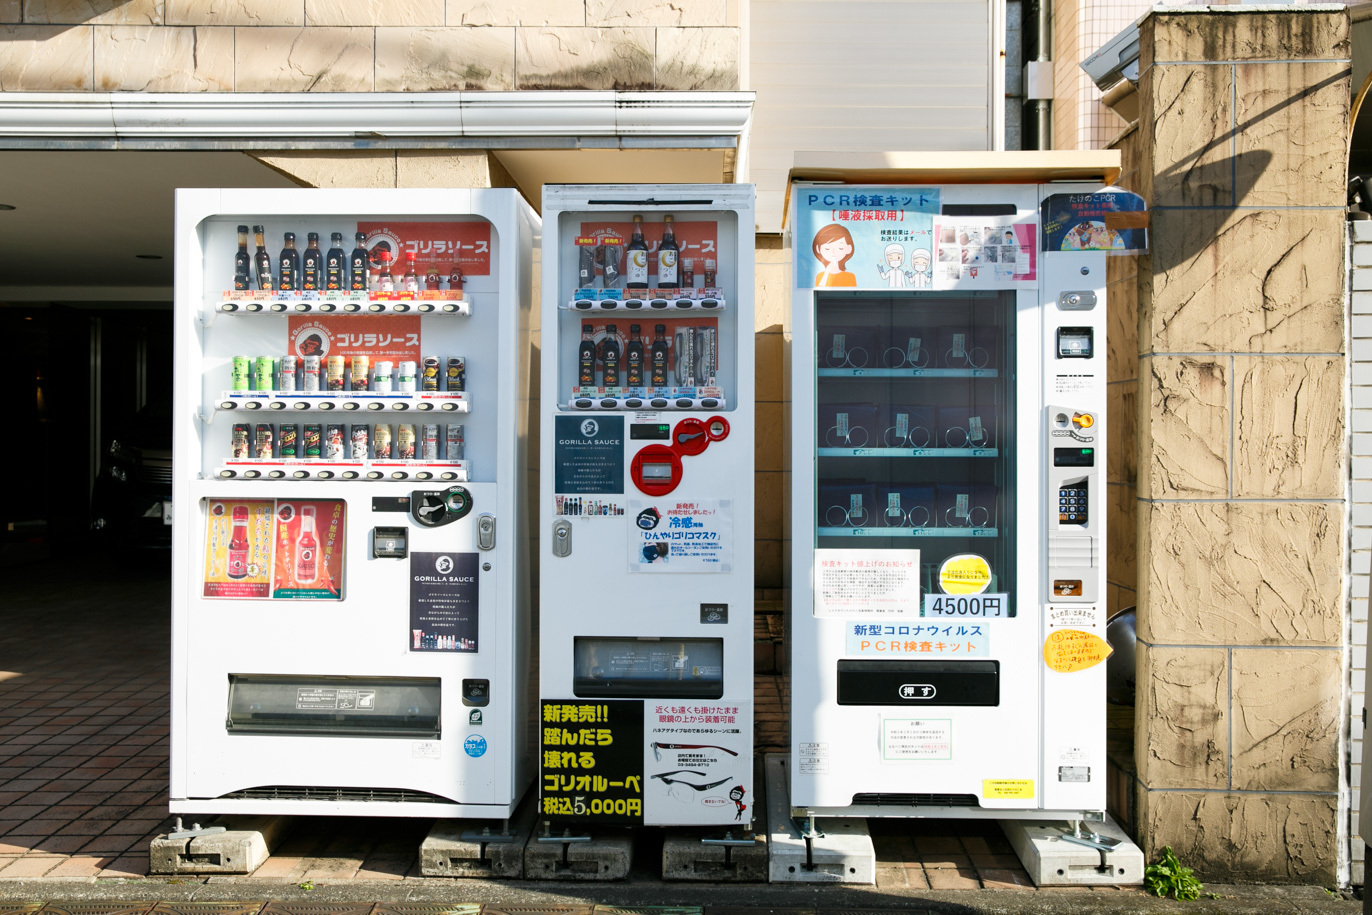 Как устроен процесс тестирования ПЦР в торговых автоматах в Японии и почему такого нет в России